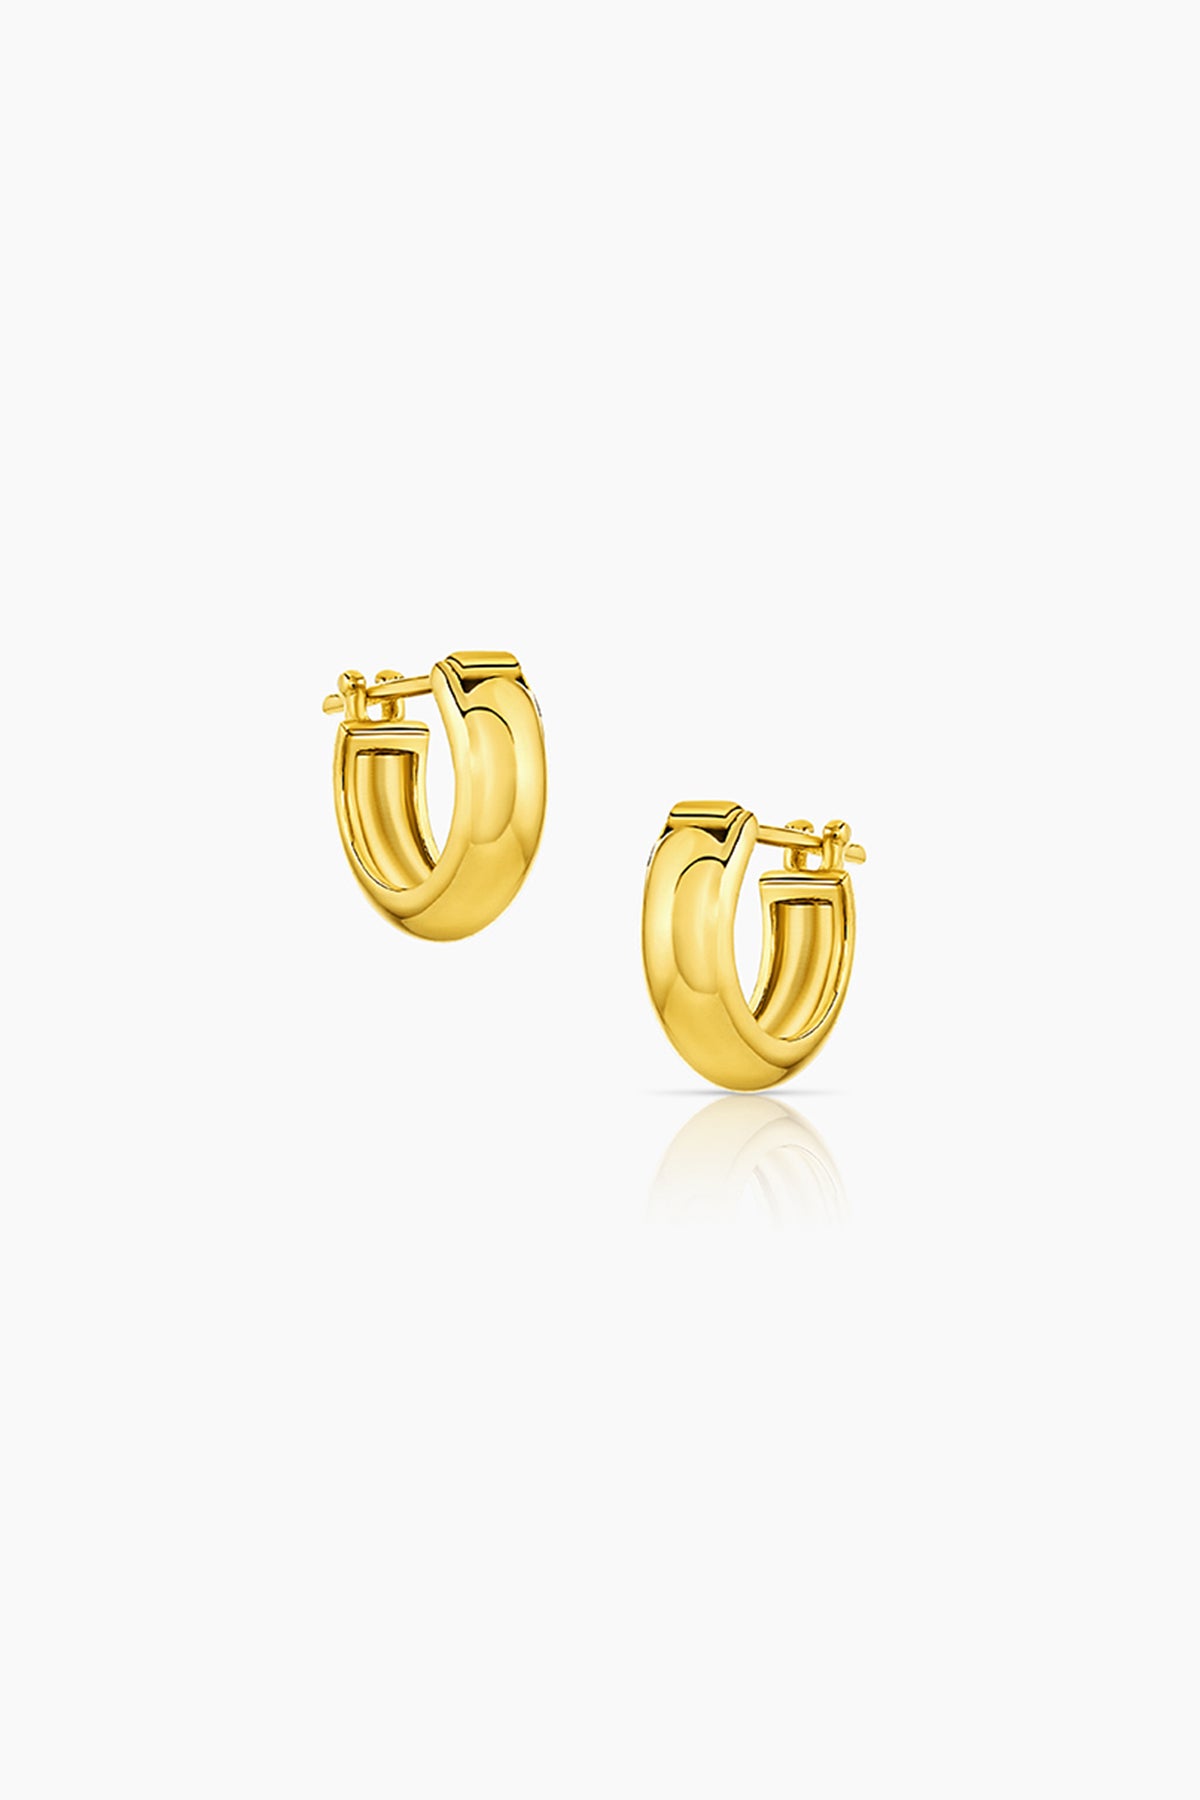 A pair of Thatch yellow gold hoop earrings named VINCE HUGGIE HOOPS.-35526319308993